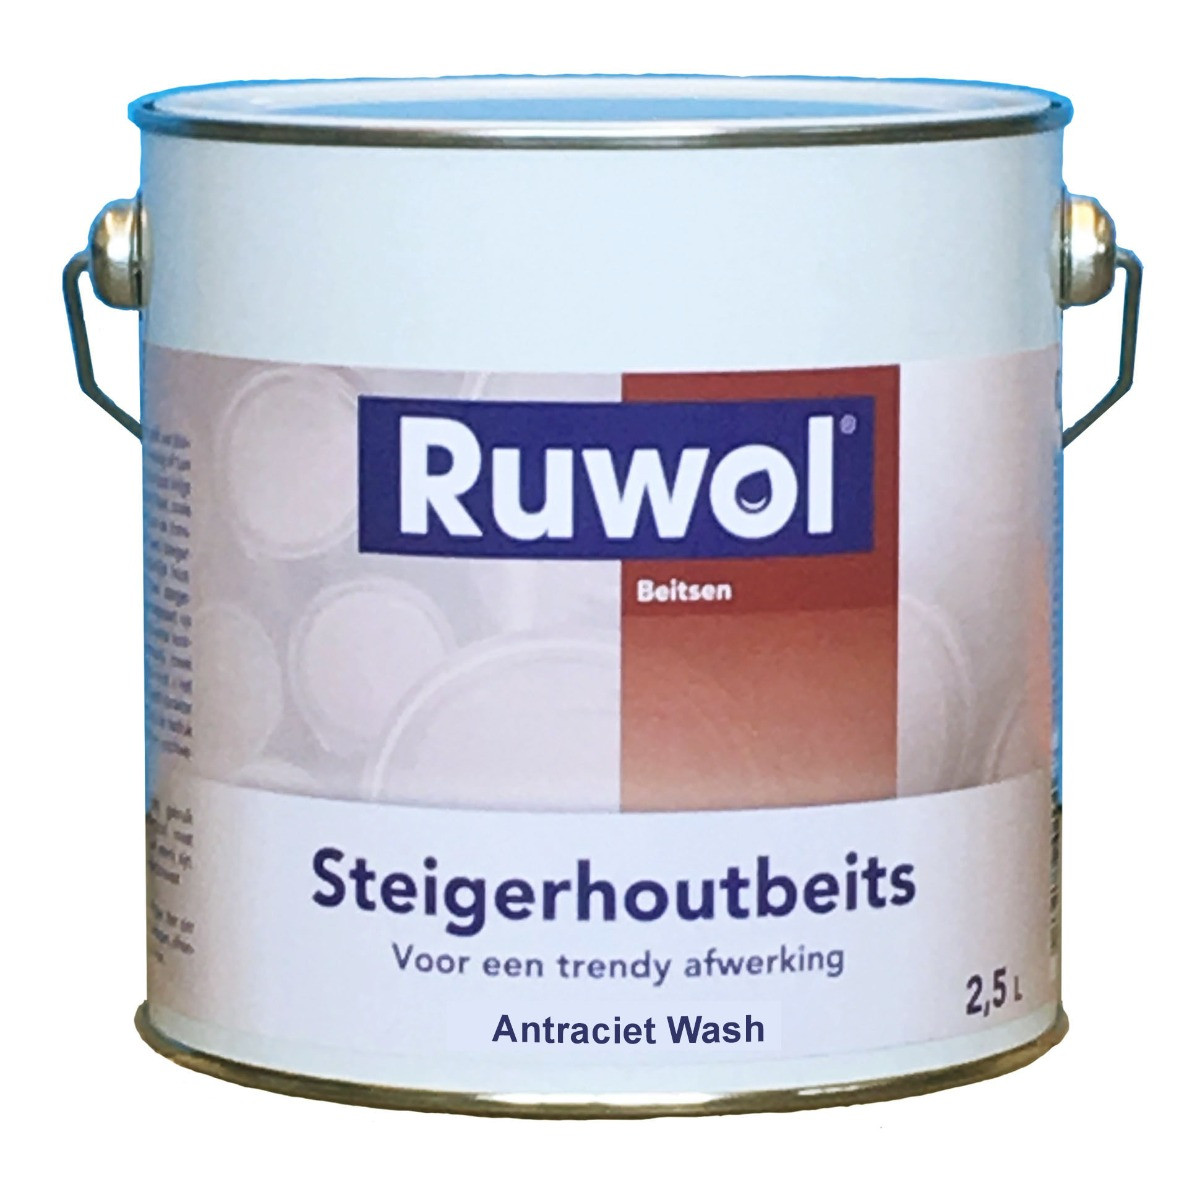 Ruwol Steigerhoutbeits Antraciet Wash 2,5 liter